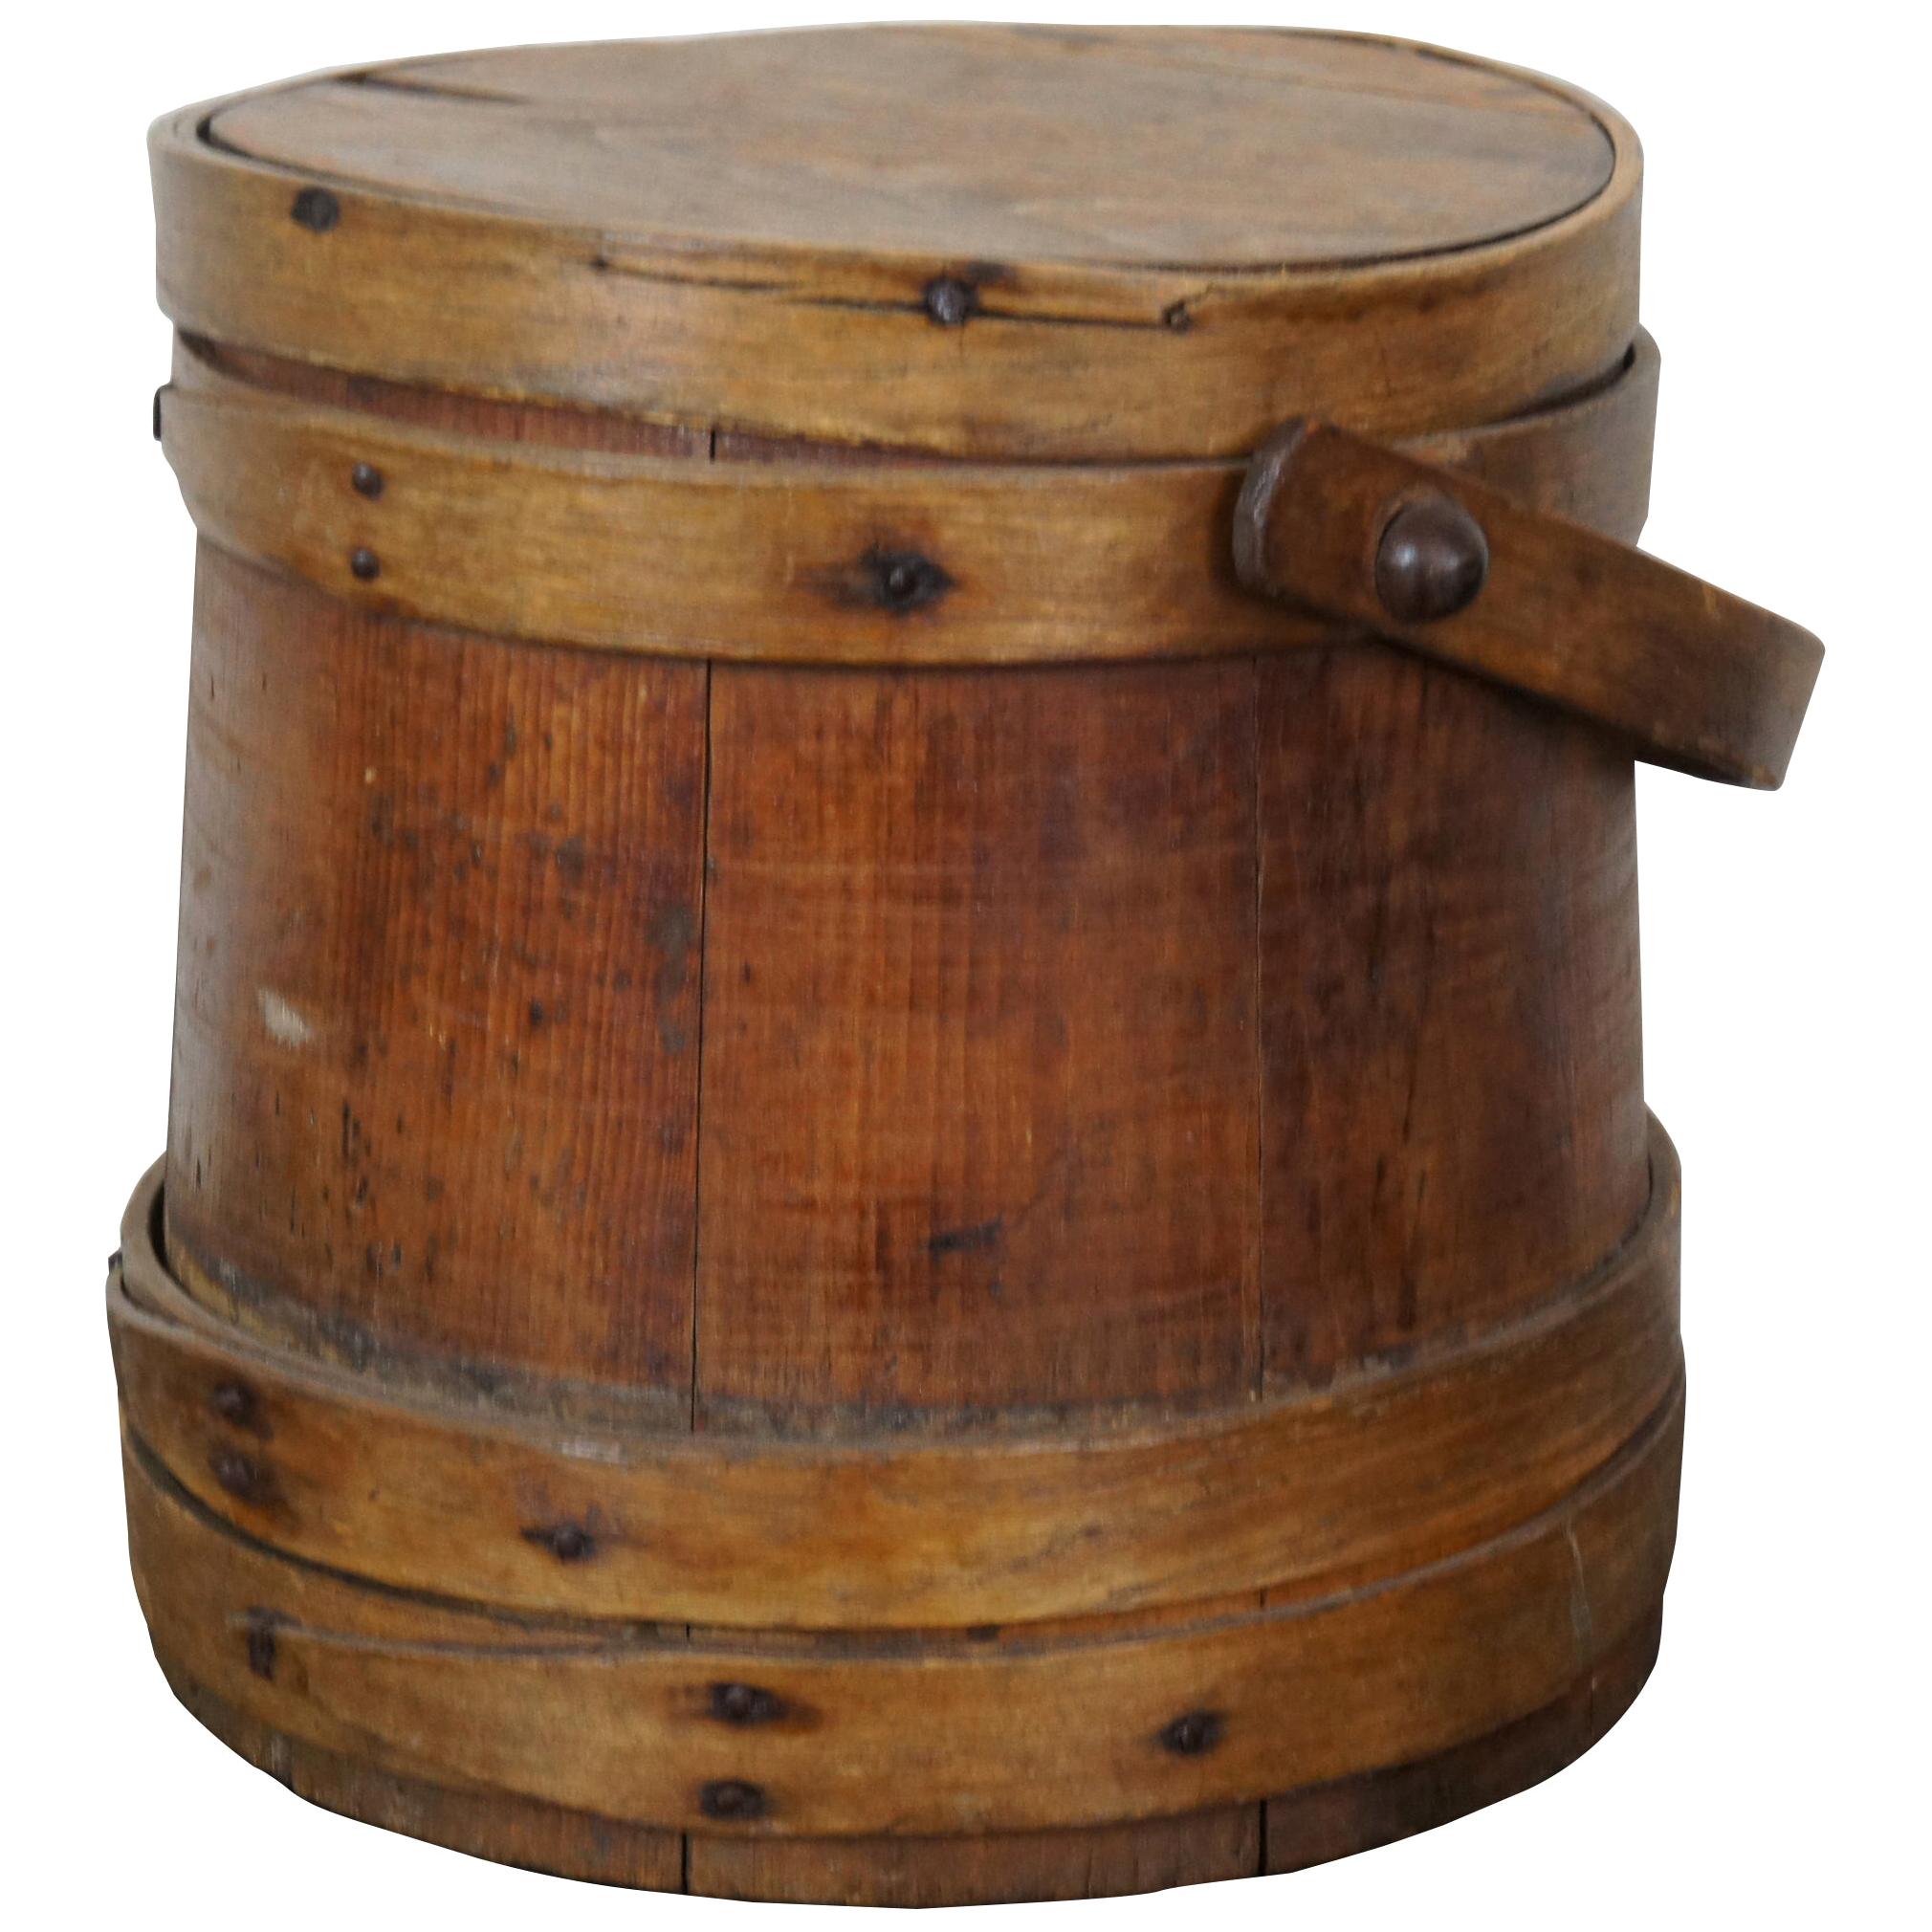 Antique 19th Century Primitive Wooden Firkin Sugar Bucket Bail Basket